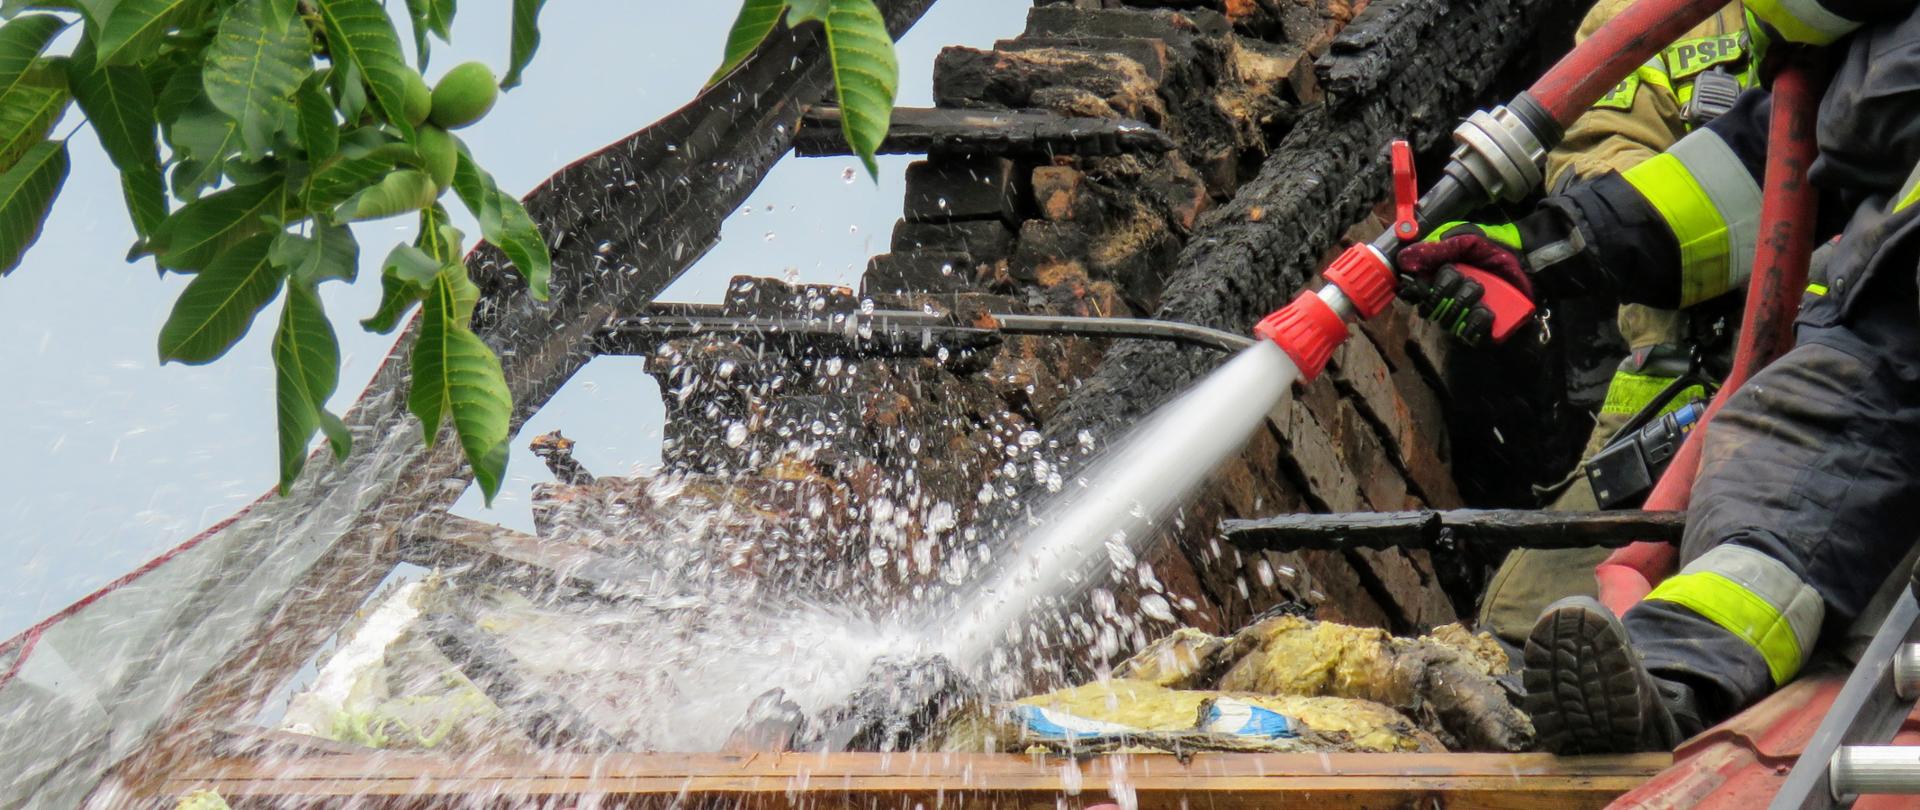 Pożar domu w miejscowości Łaz - gaszenie dachu